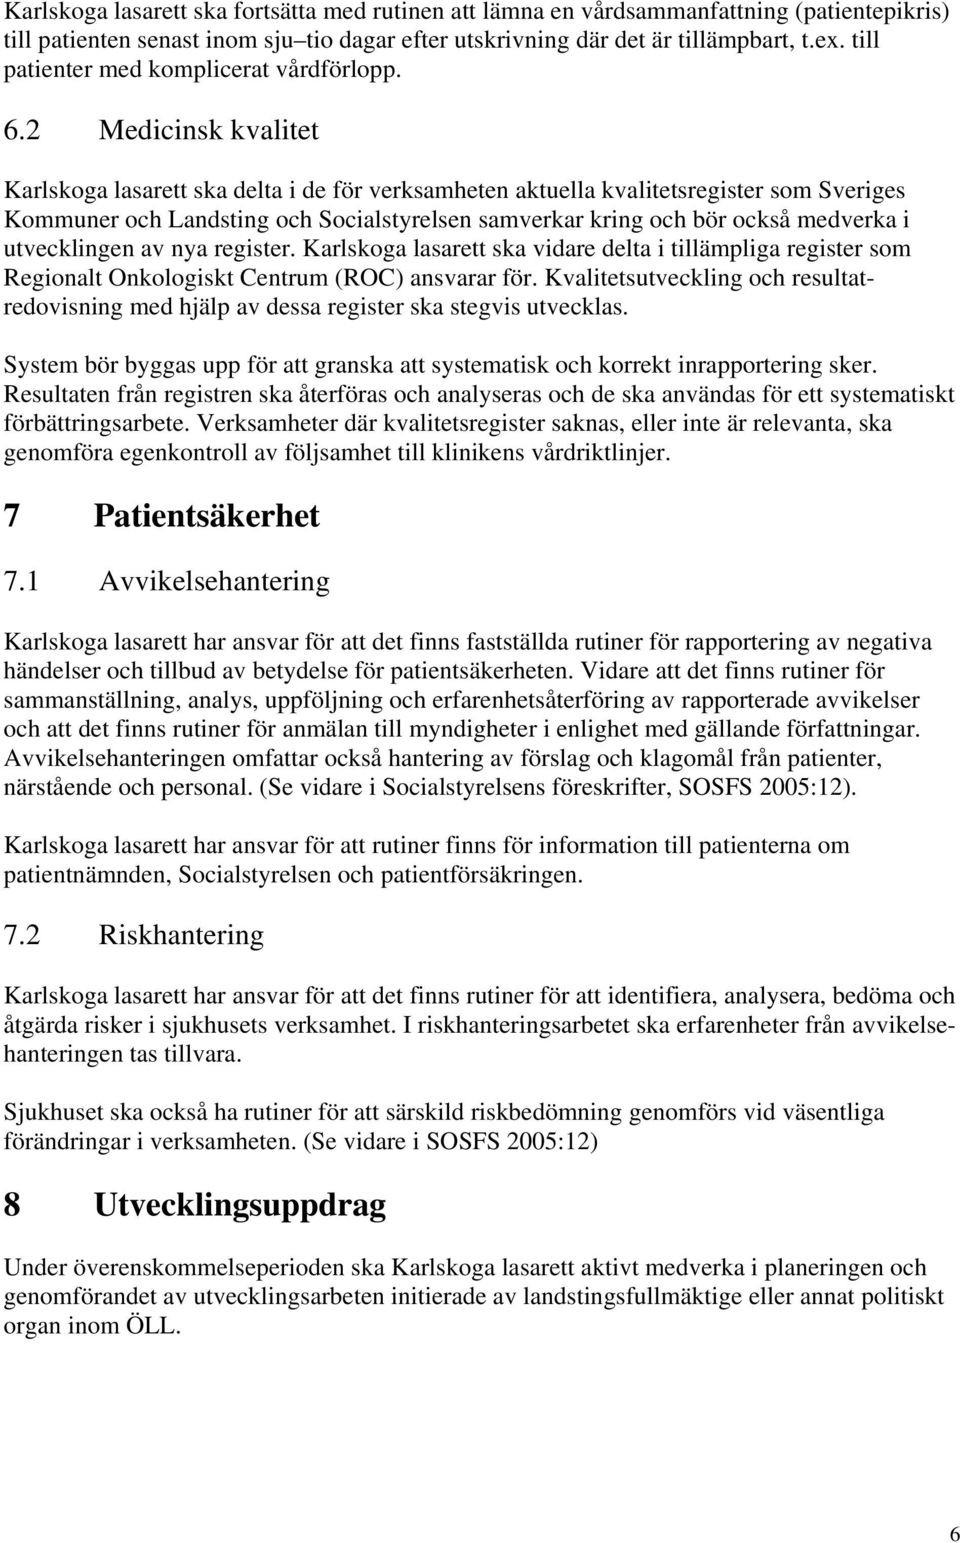 2 Medicinsk kvalitet Karlskoga lasarett ska delta i de för verksamheten aktuella kvalitetsregister som Sveriges Kommuner och Landsting och Socialstyrelsen samverkar kring och bör också medverka i